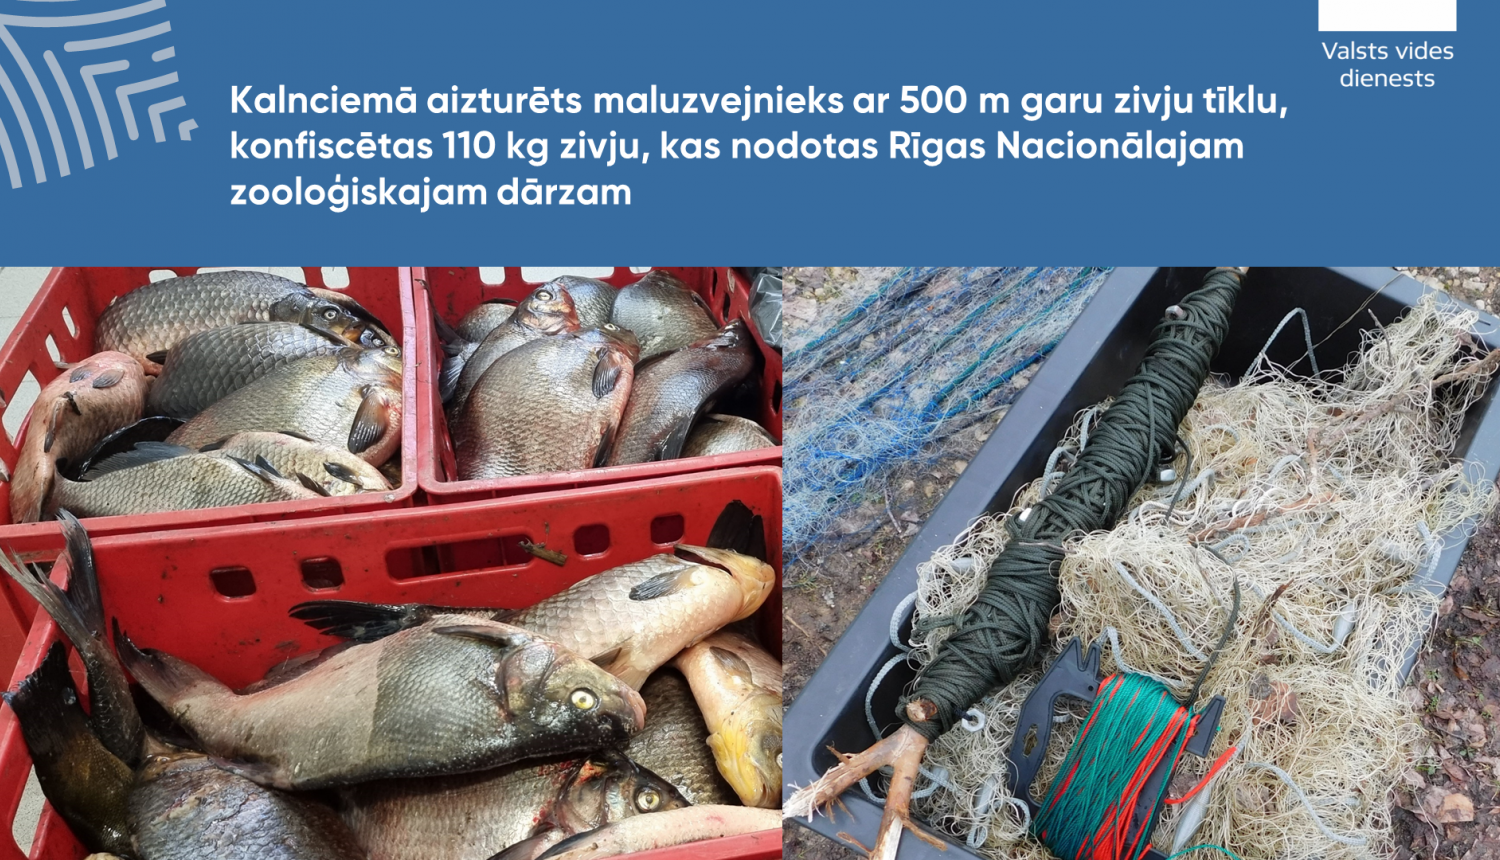 Kalnciemā aizturēts maluzvejnieks ar 500 m garu zivju tīklu, konfiscētas 110 kg zivju, kas nodotas Rīgas Nacionālajam zooloģiskajam dārzam